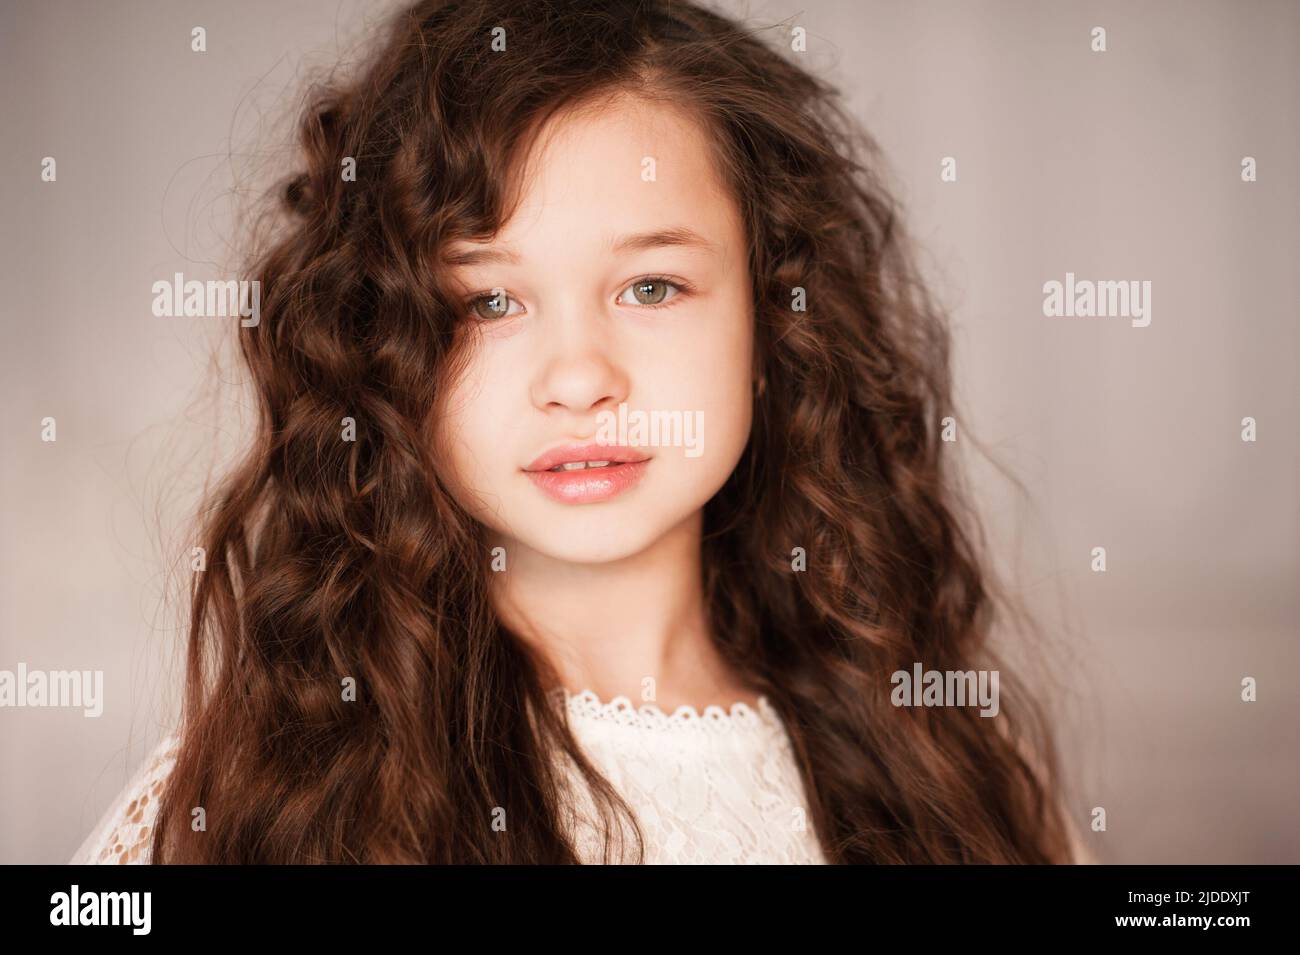 Bonita hermosa niña de 10-12 años con largo pelo rubio oscuro en la habitación de cerca. Retrato de joven adolescente. Infancia. Foto de stock